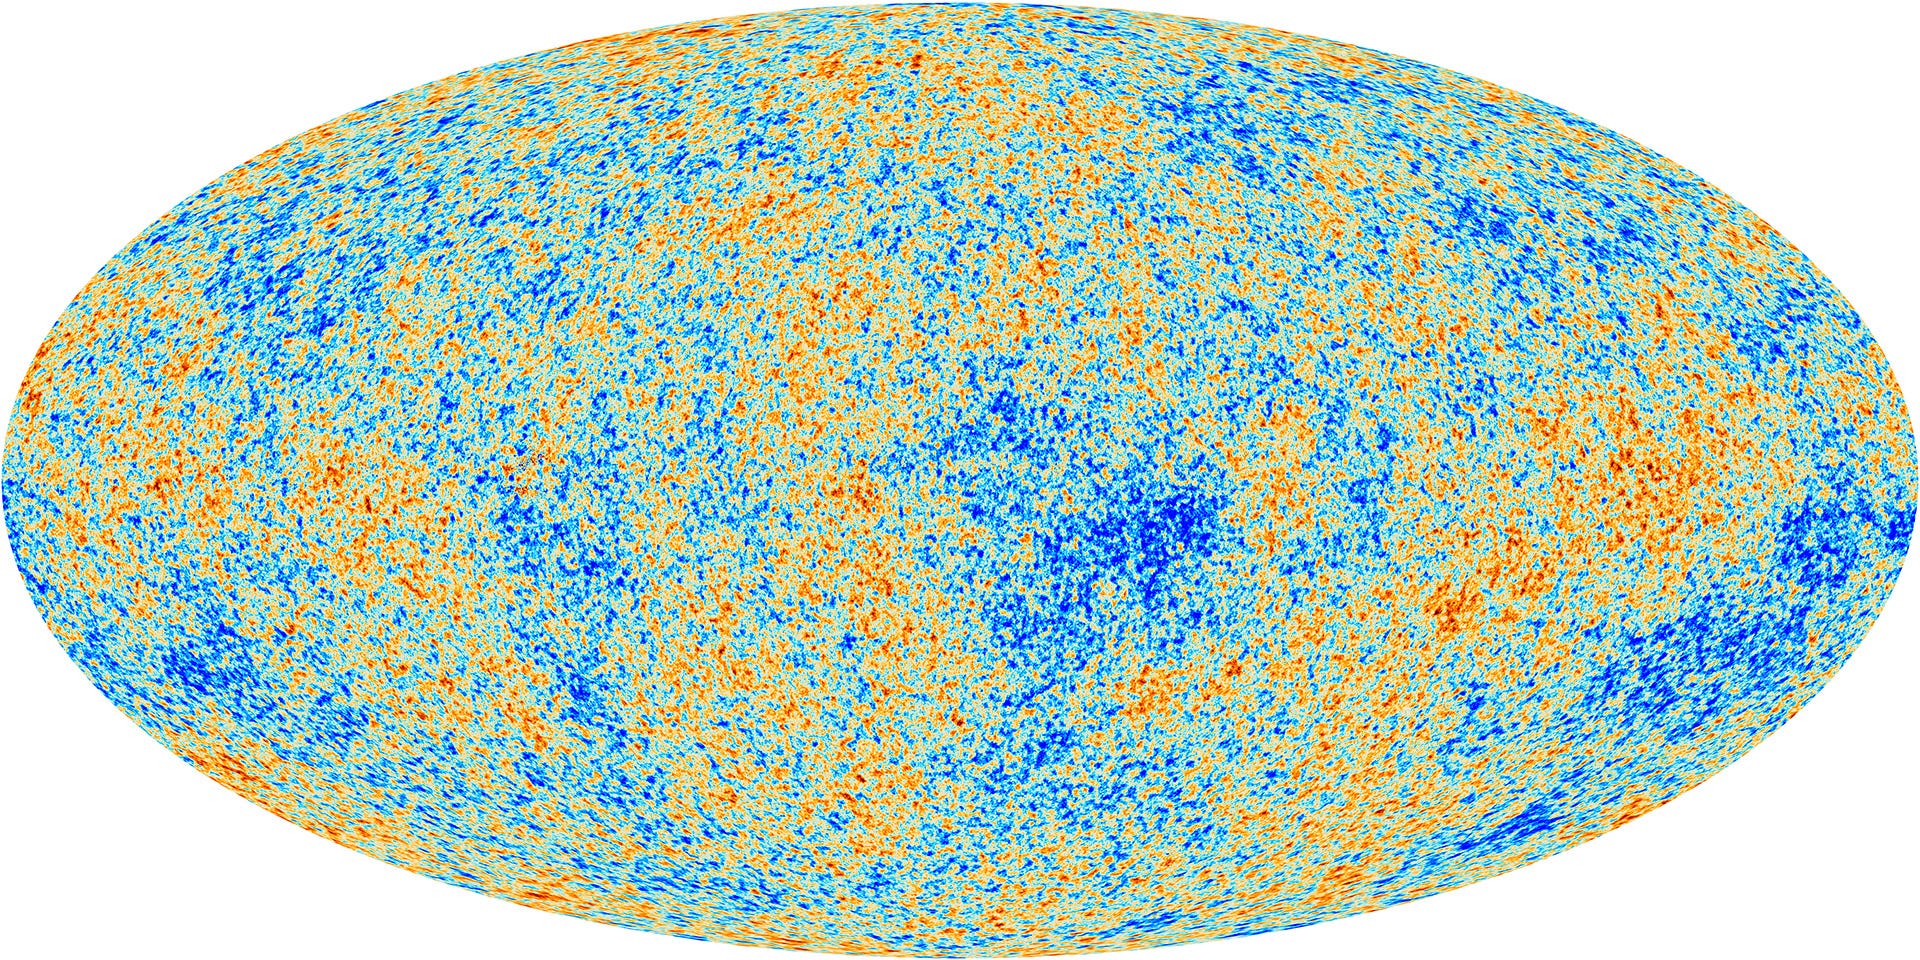 Kosmischer Mikrowellenhintergrund nach Planck